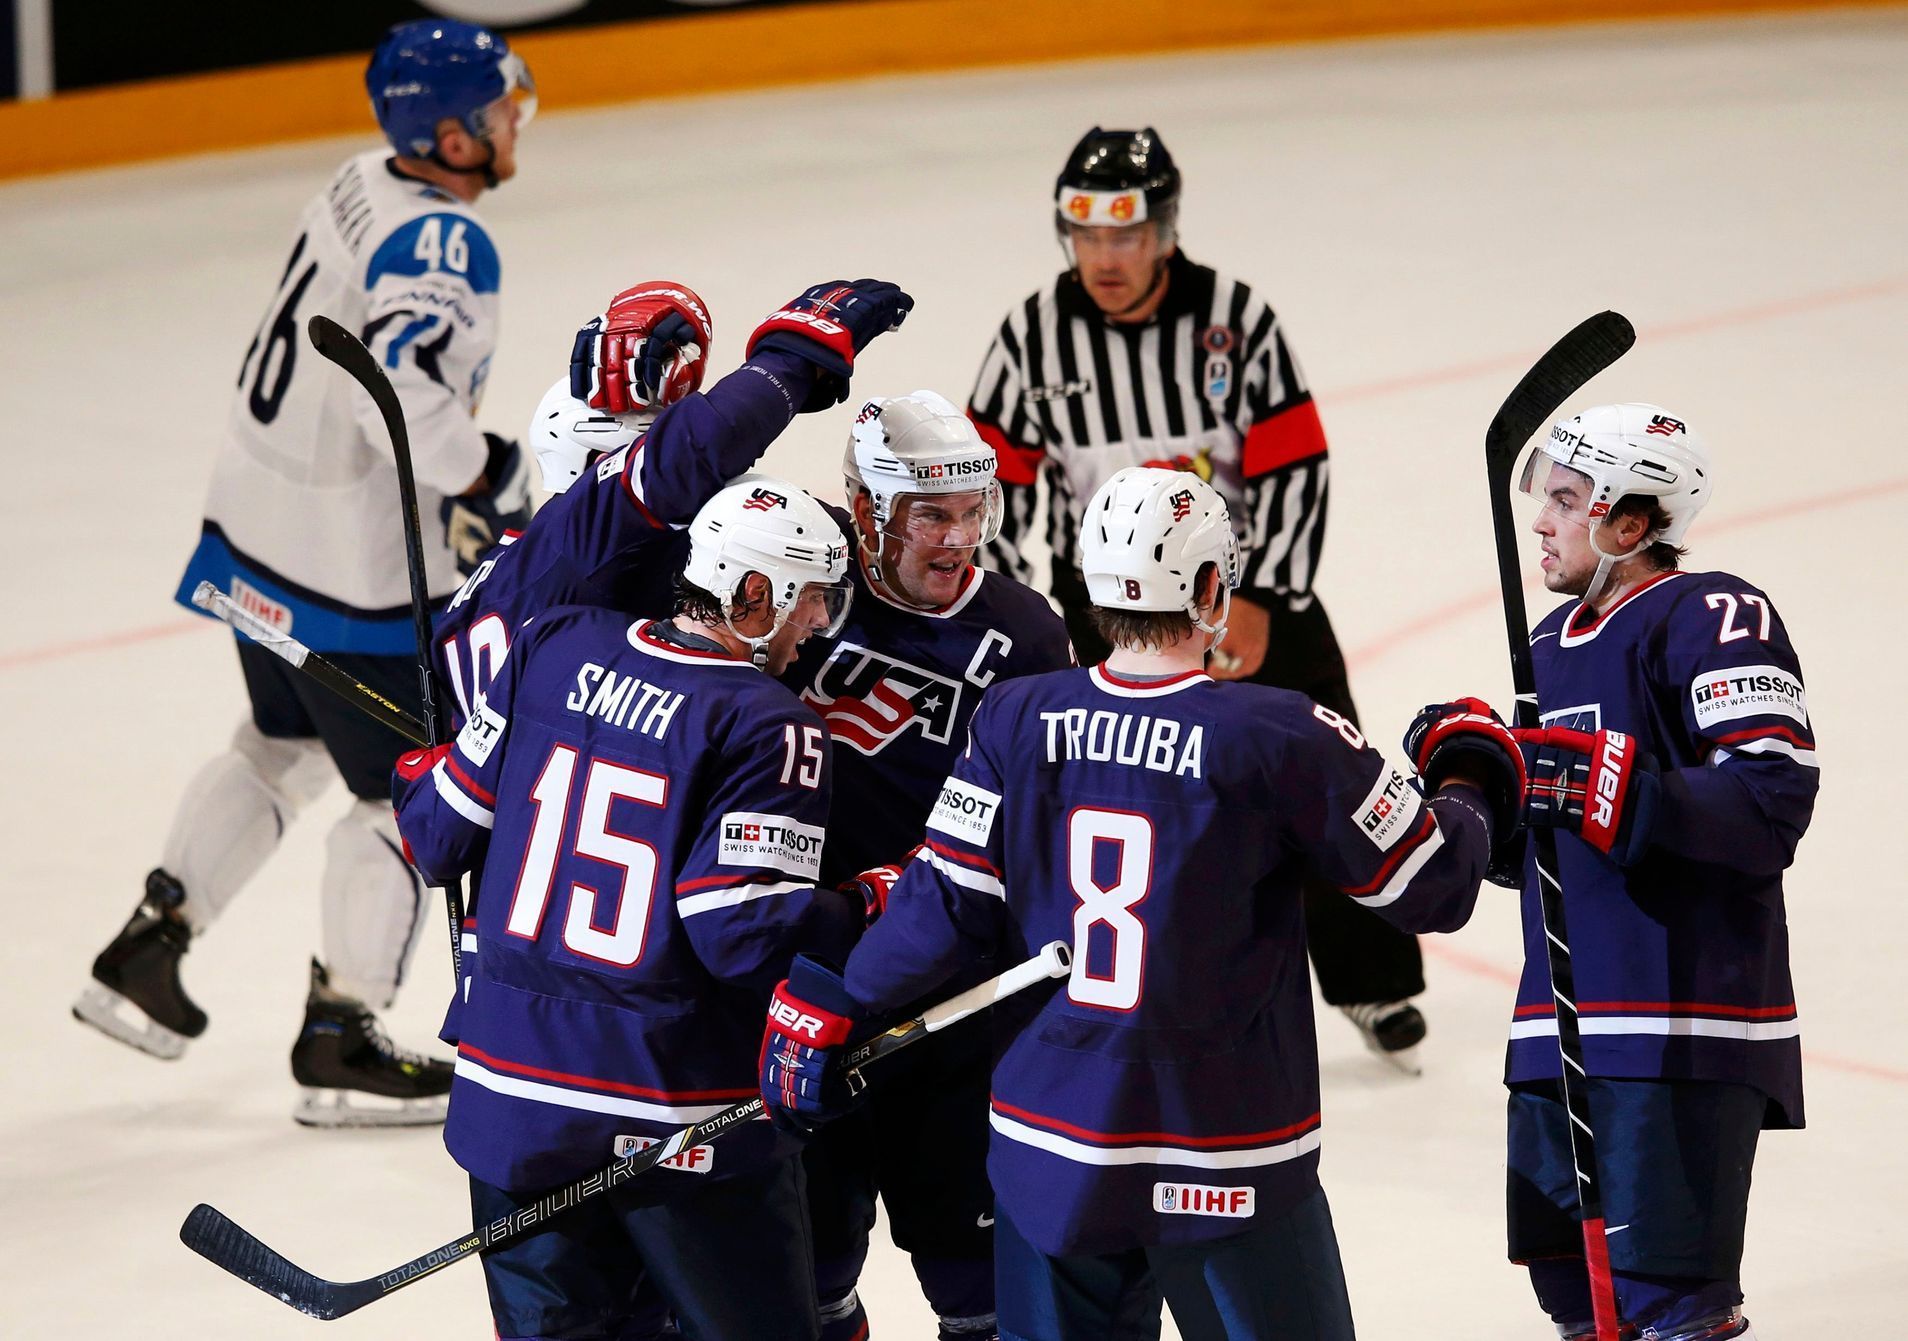 Hokej, MS 2013, USA - Finsko: Američané slaví gól